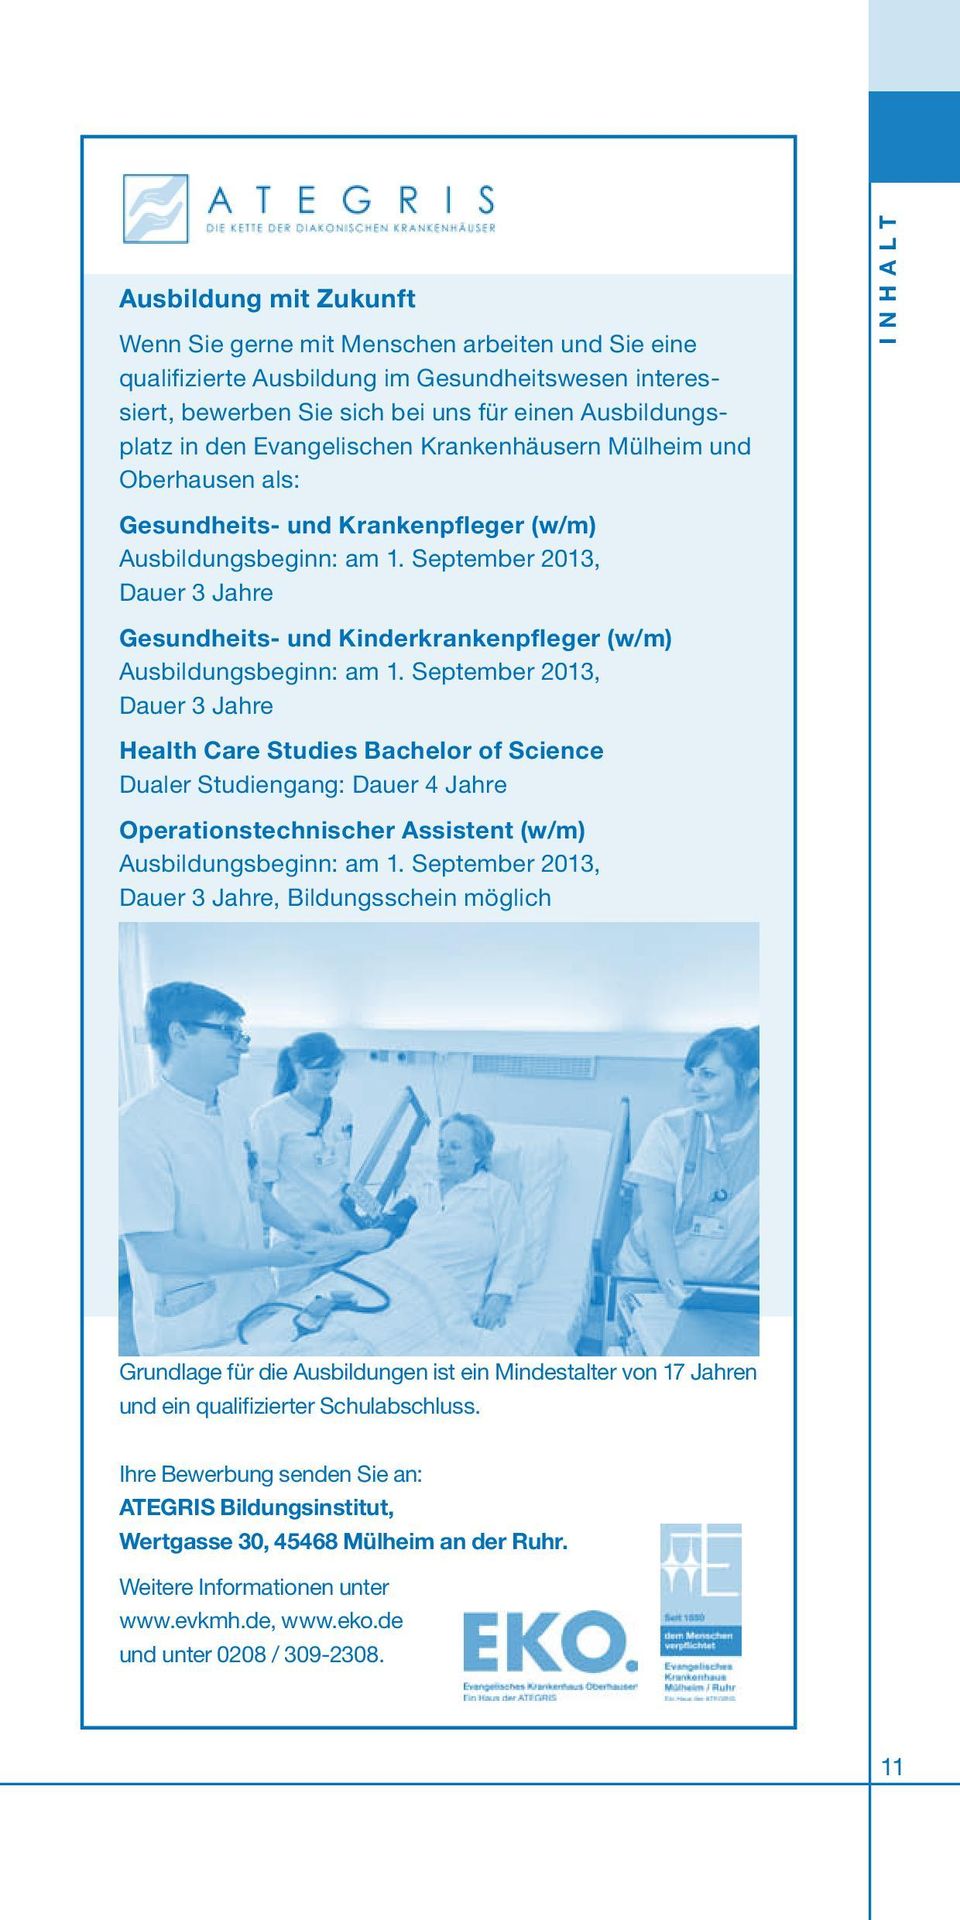 September 2013, Dauer 3 Jahre Gesundheits- und Kinderkrankenpfleger (w/m) Ausbildungsbeginn: am 1.